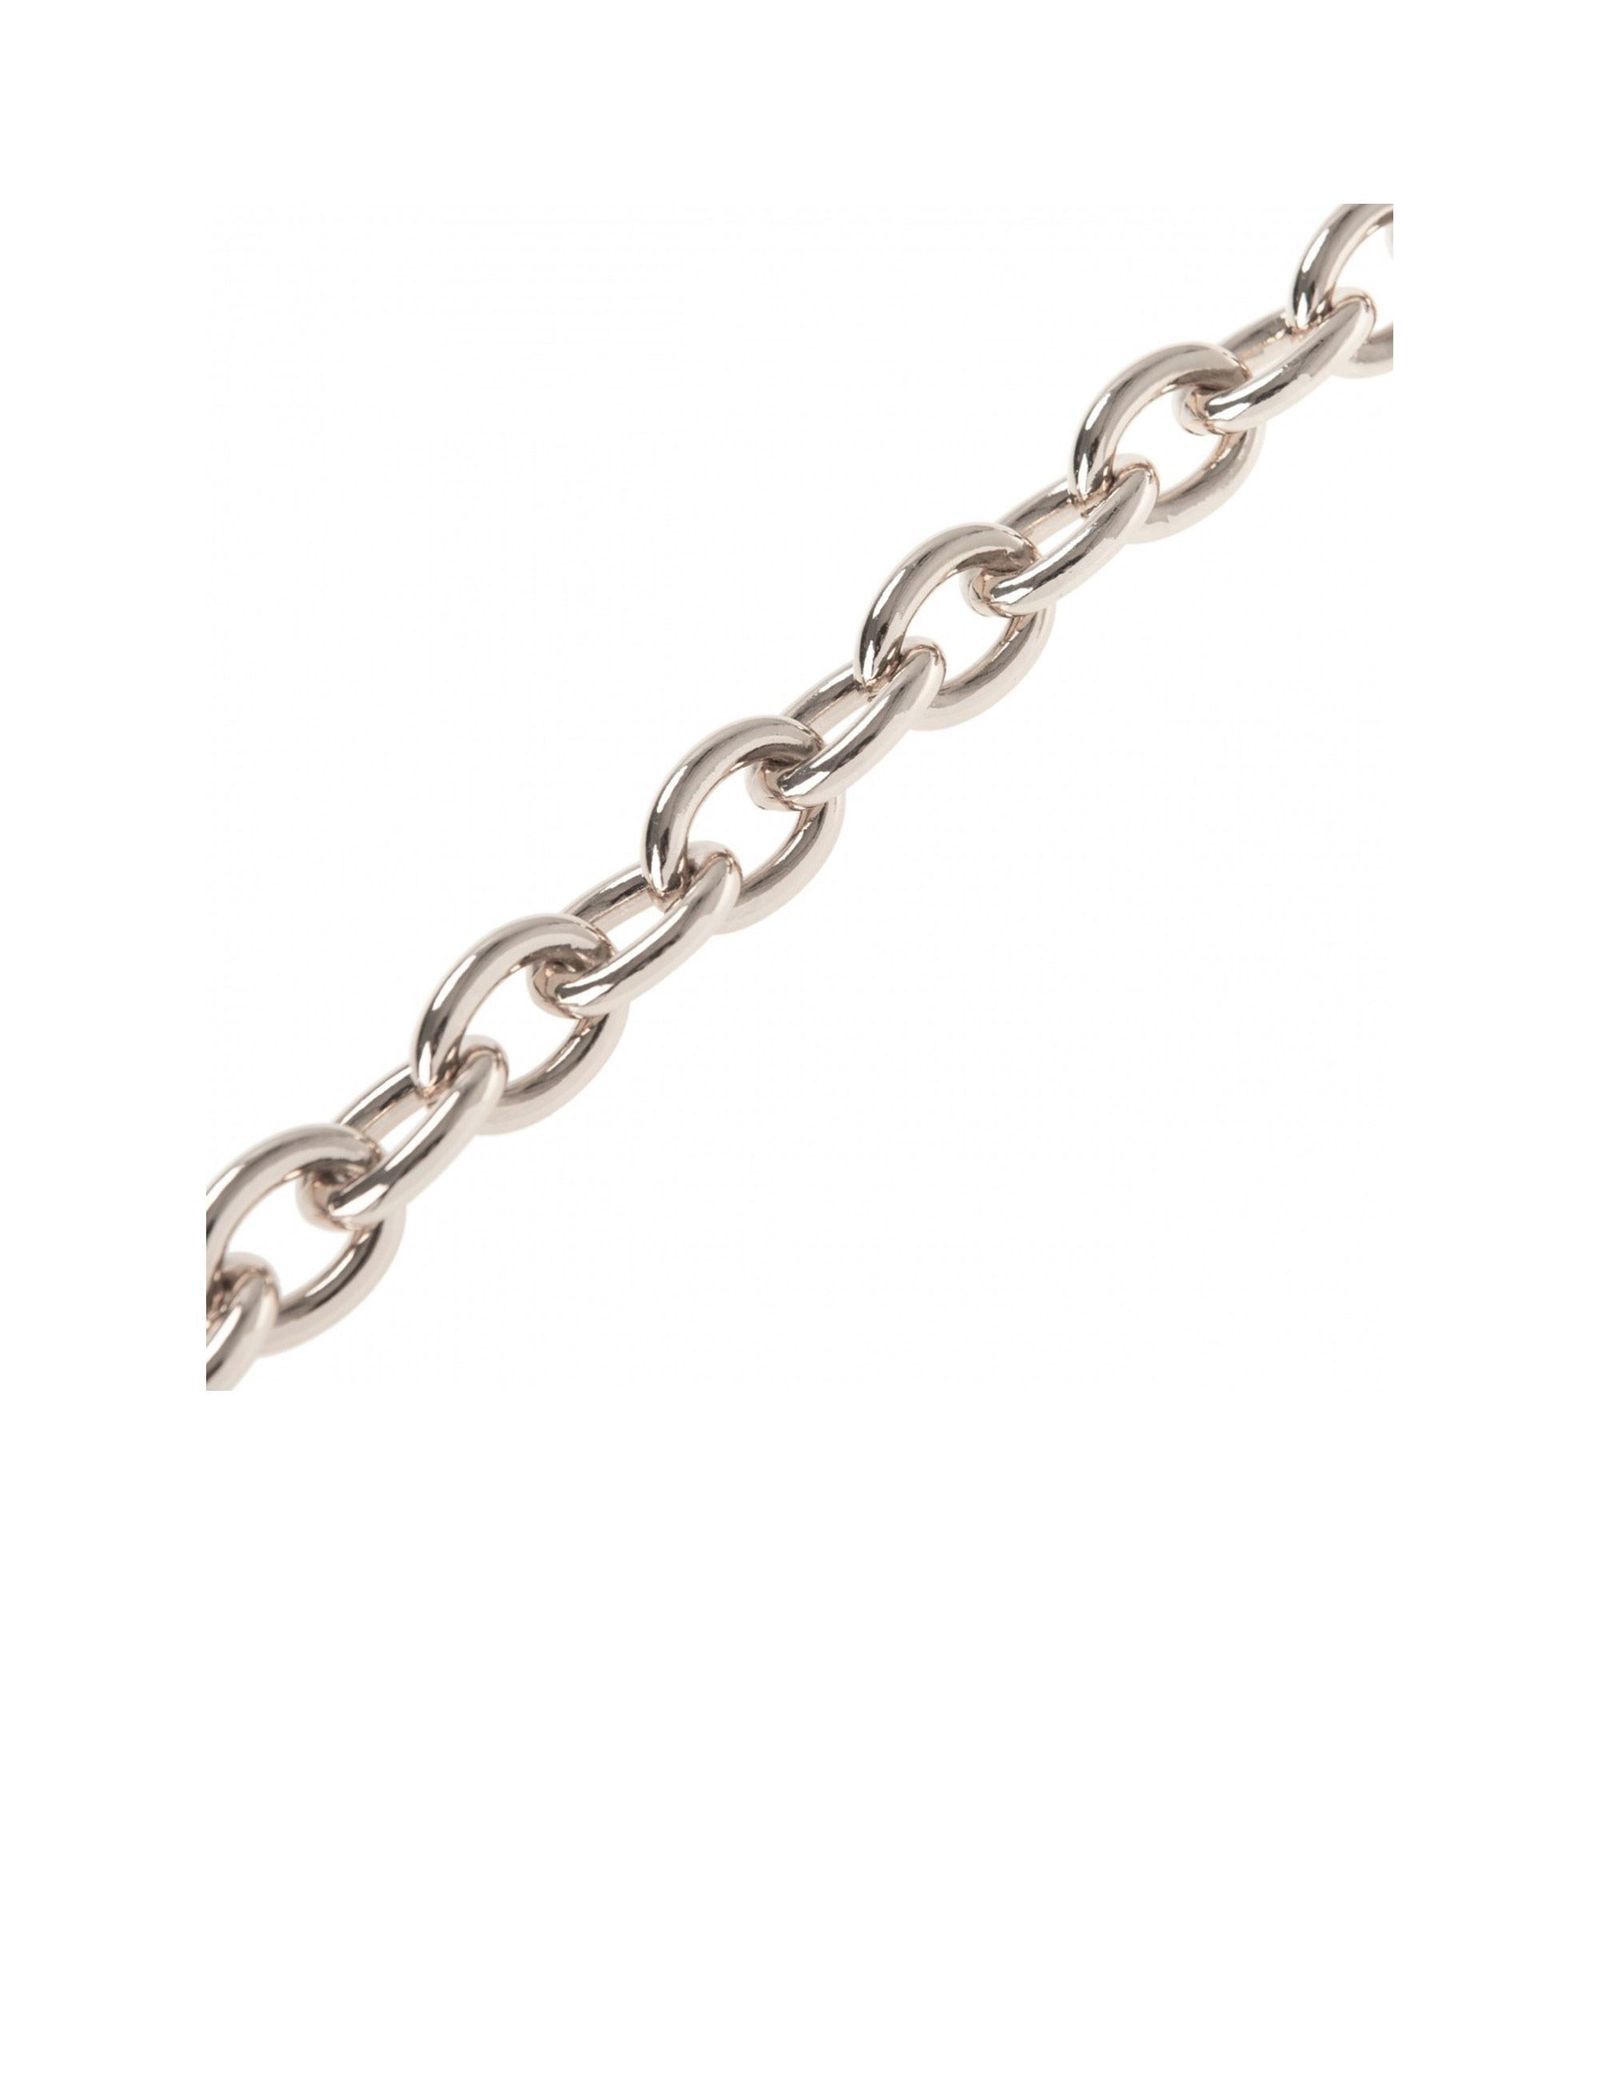 گردنبند زنجیری زنانه - پارفوا تک سایز - نقره اي - 3